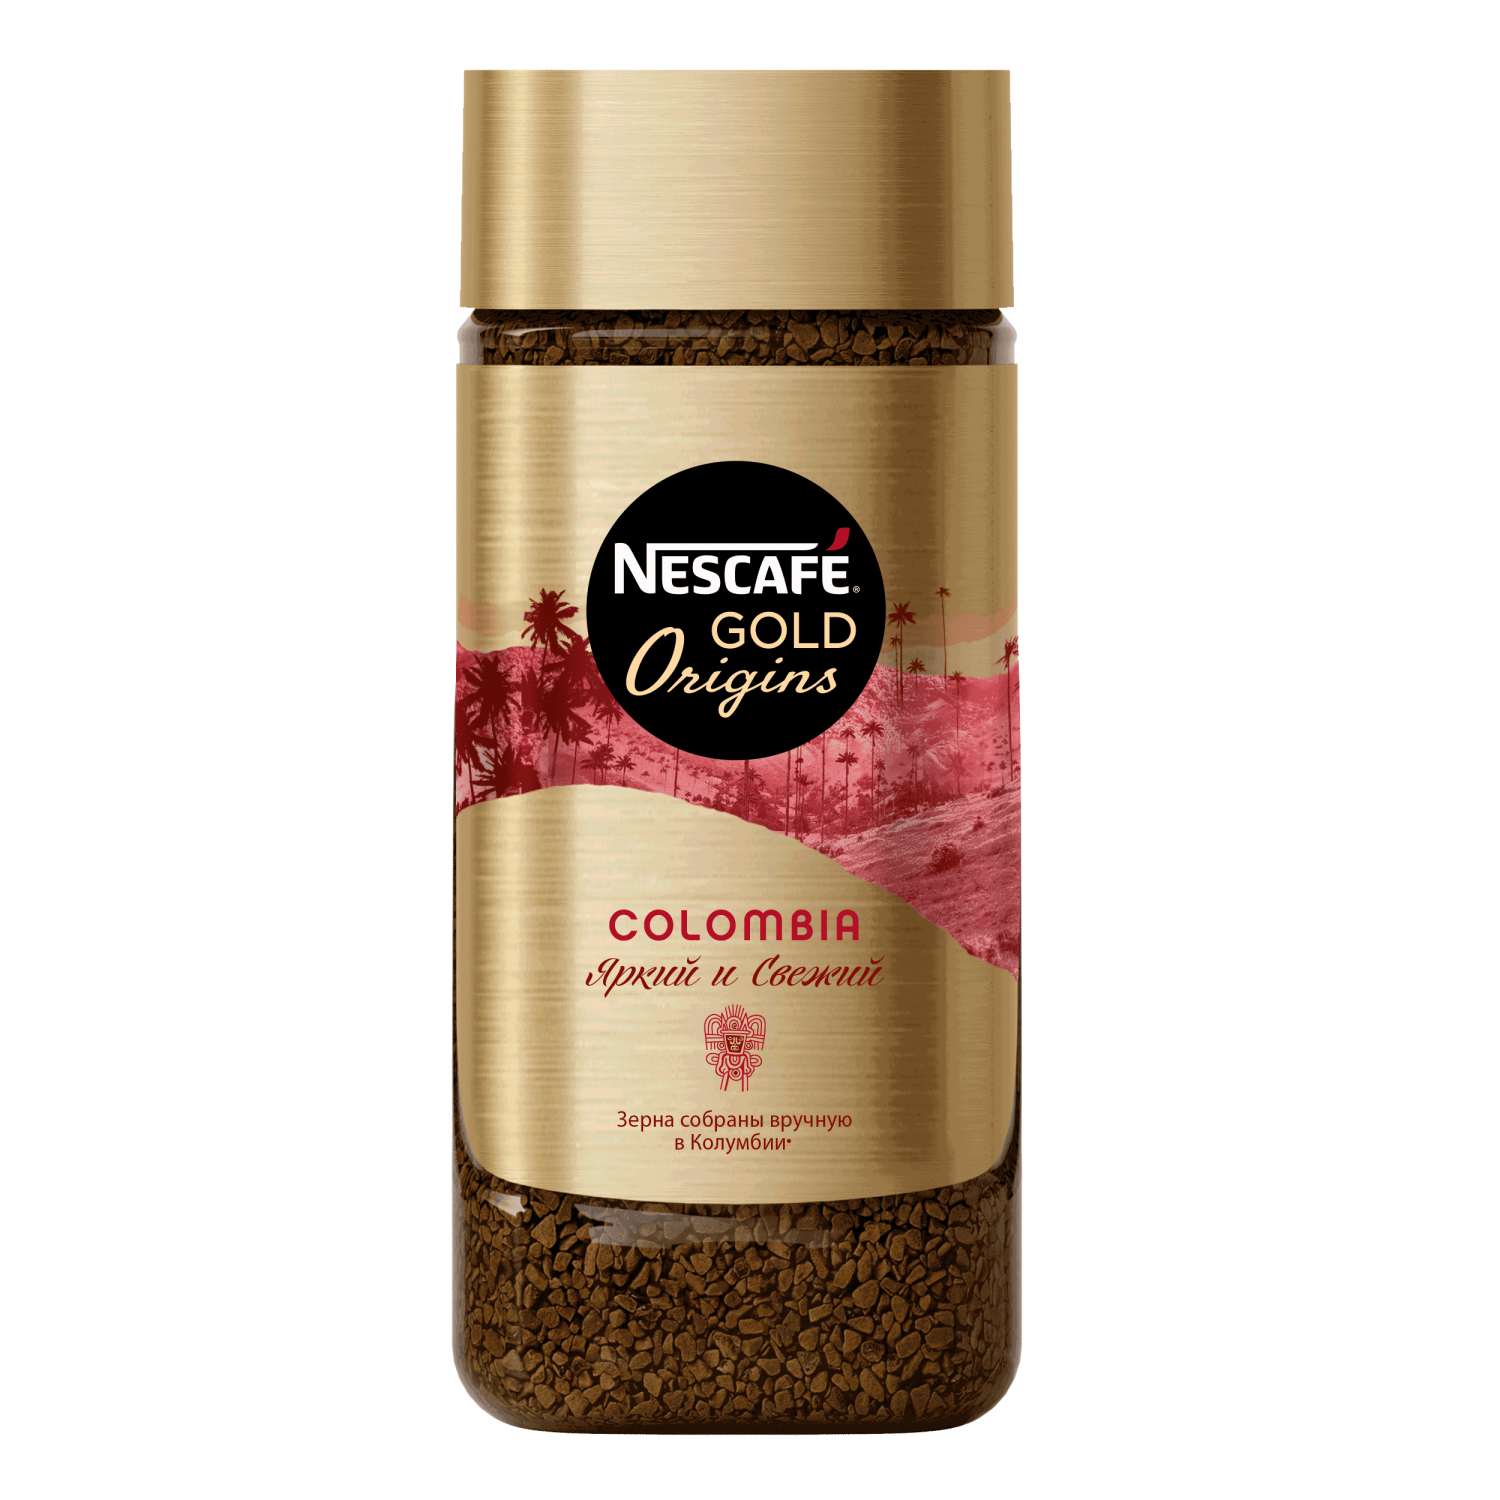 Нескафе Голд Оригинс. Nescafe Gold Origins. Nescafe Gold Origins Colombia. Кофе растворимый Nescafe Gold 900.